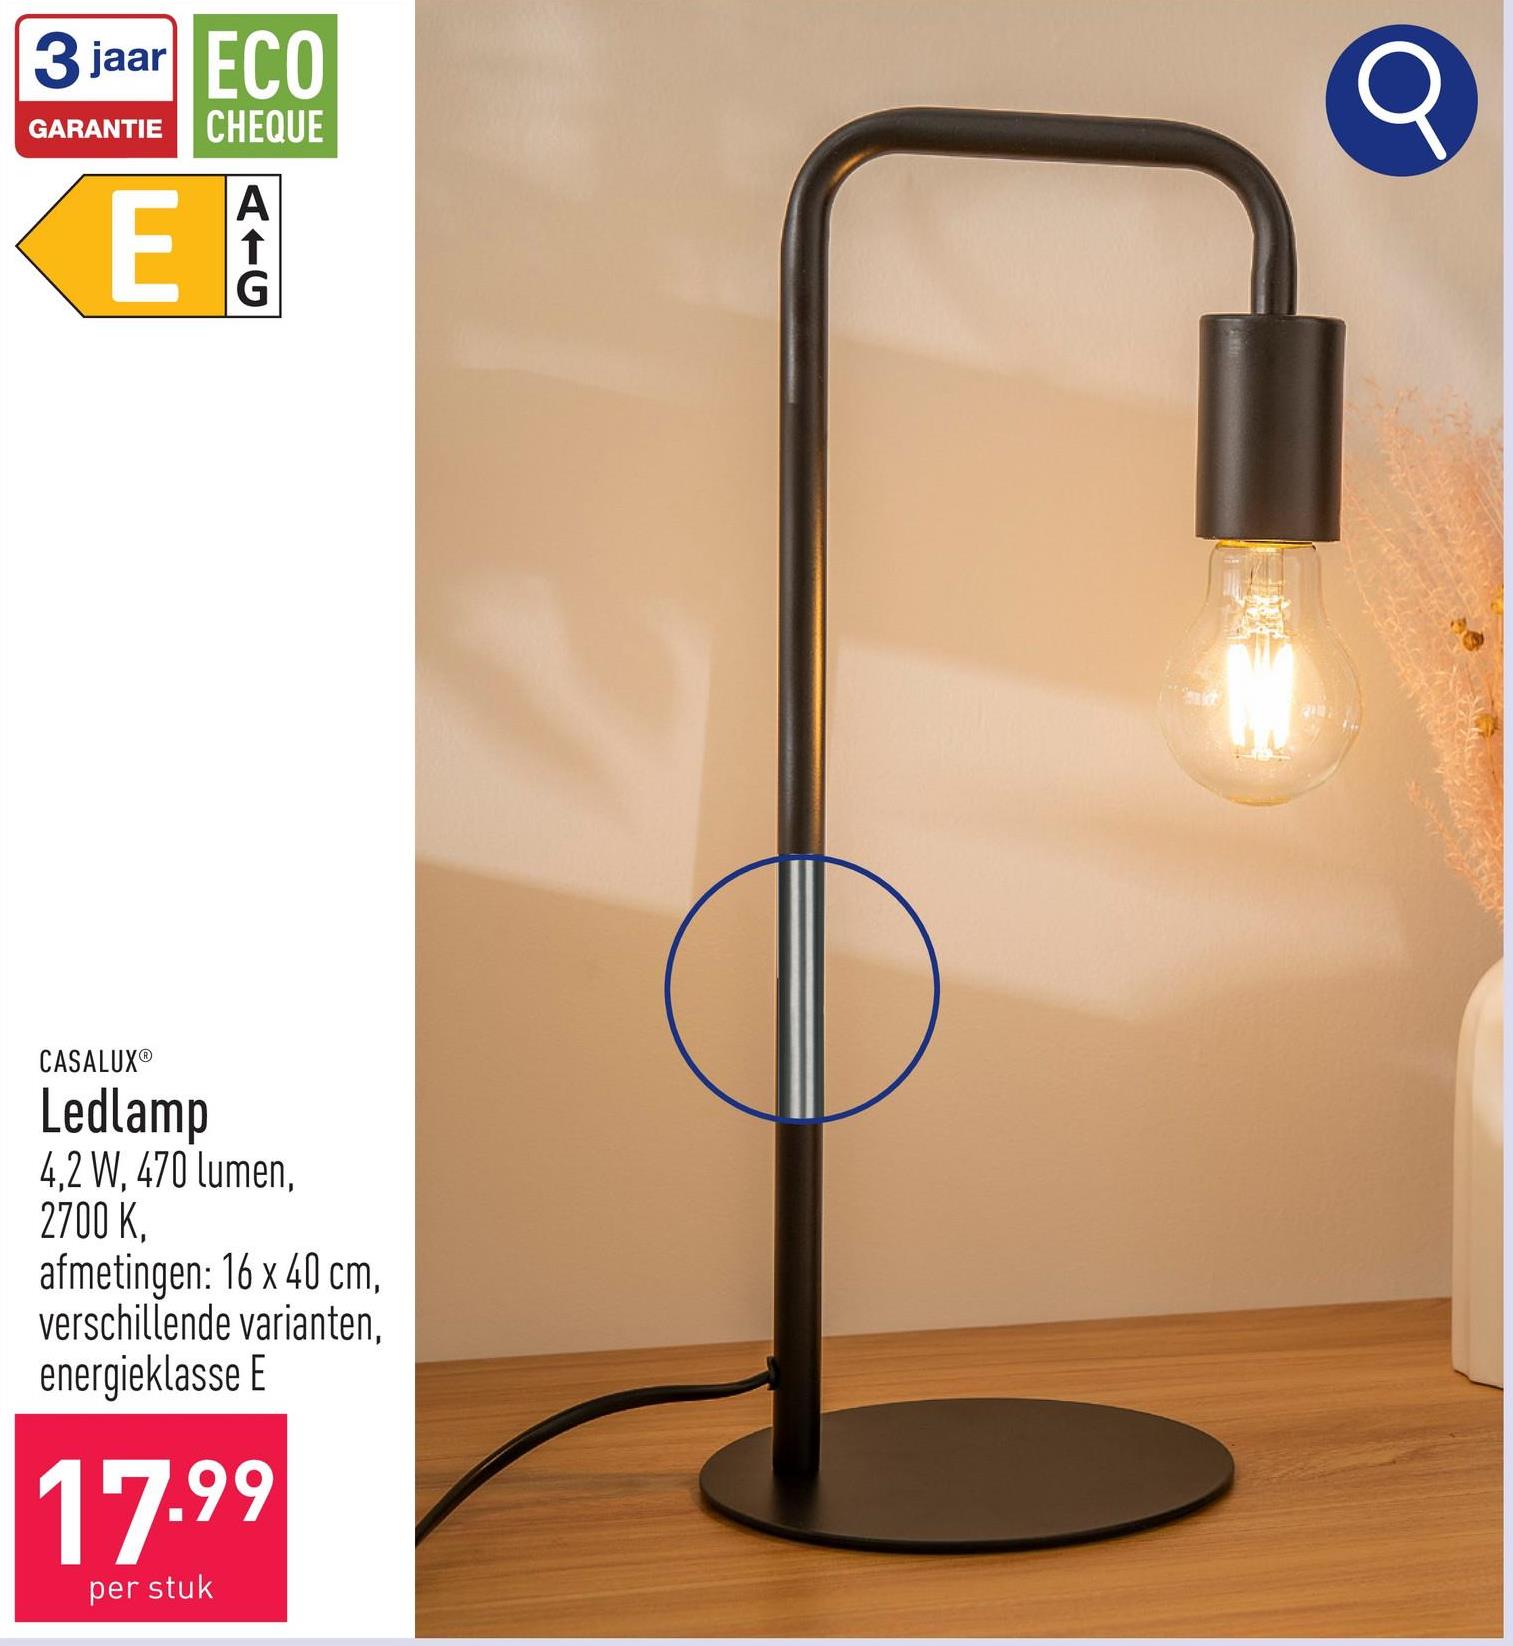 Ledlamp 4,2 W, 470 lumen, 2700 K, afmetingen: 16 x 40 cm, keuze uit verschillende varianten, energieklasse E